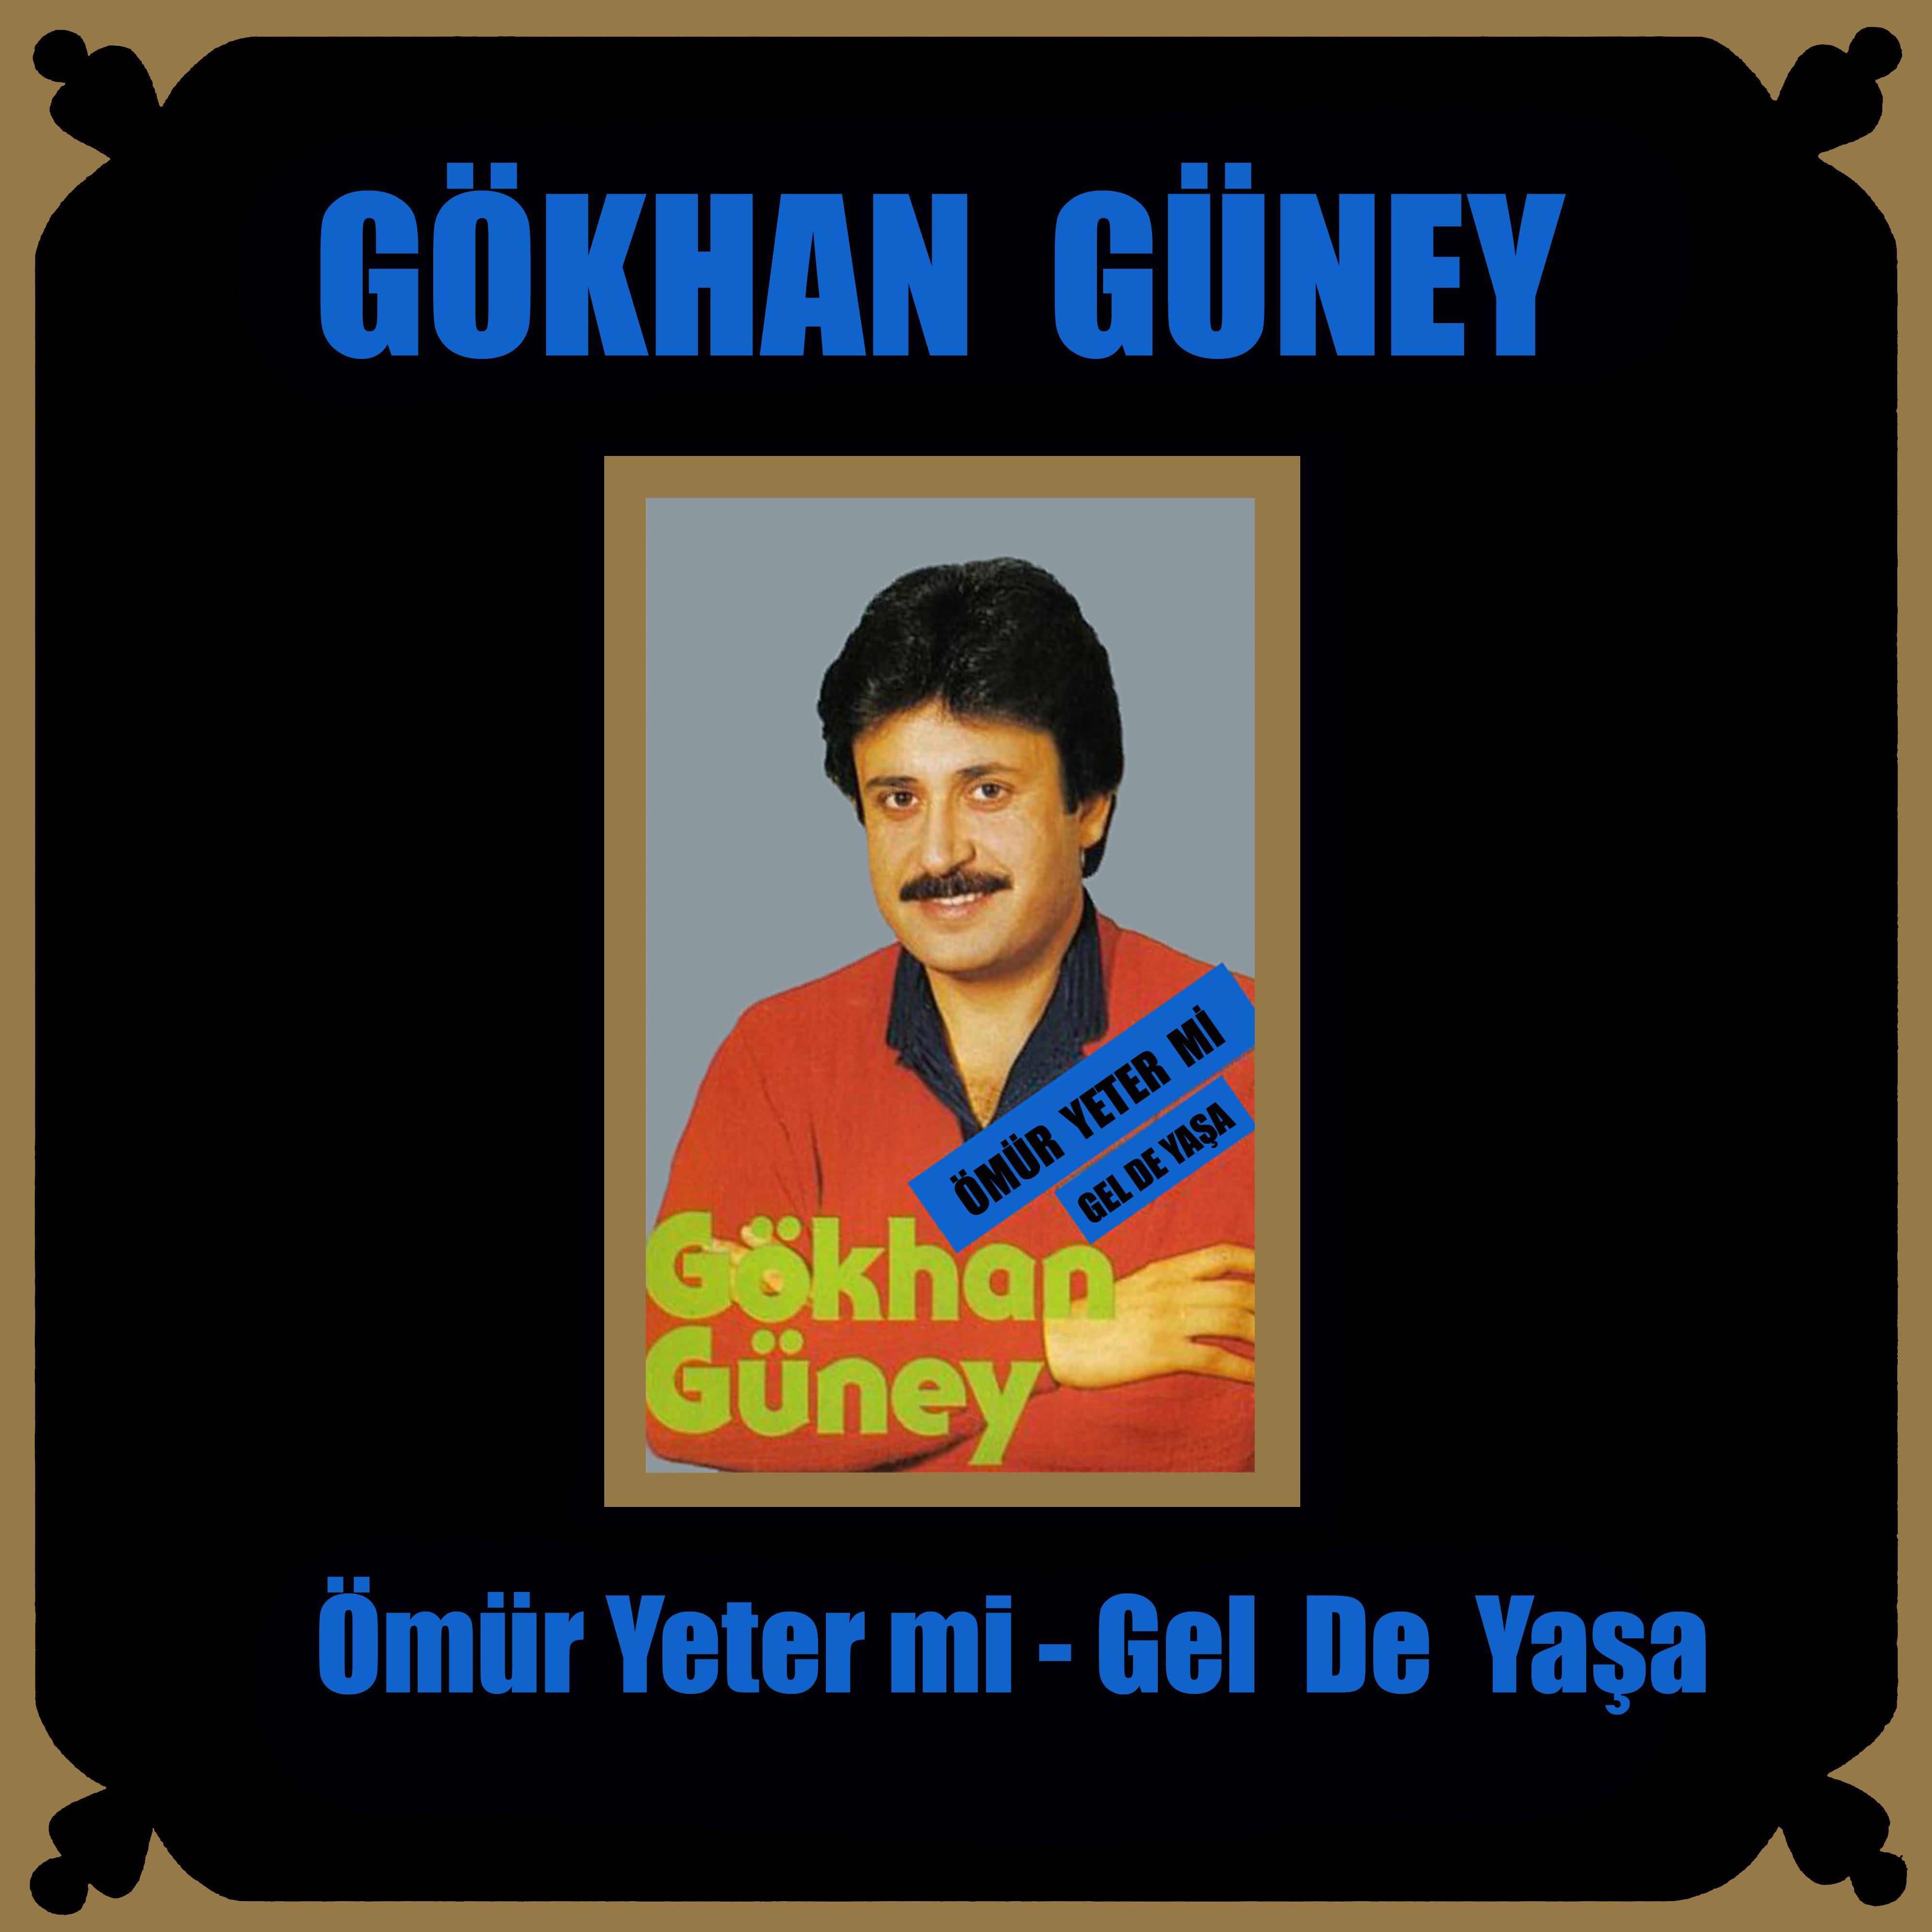 Gokhan Guney - Gel de Yaşa